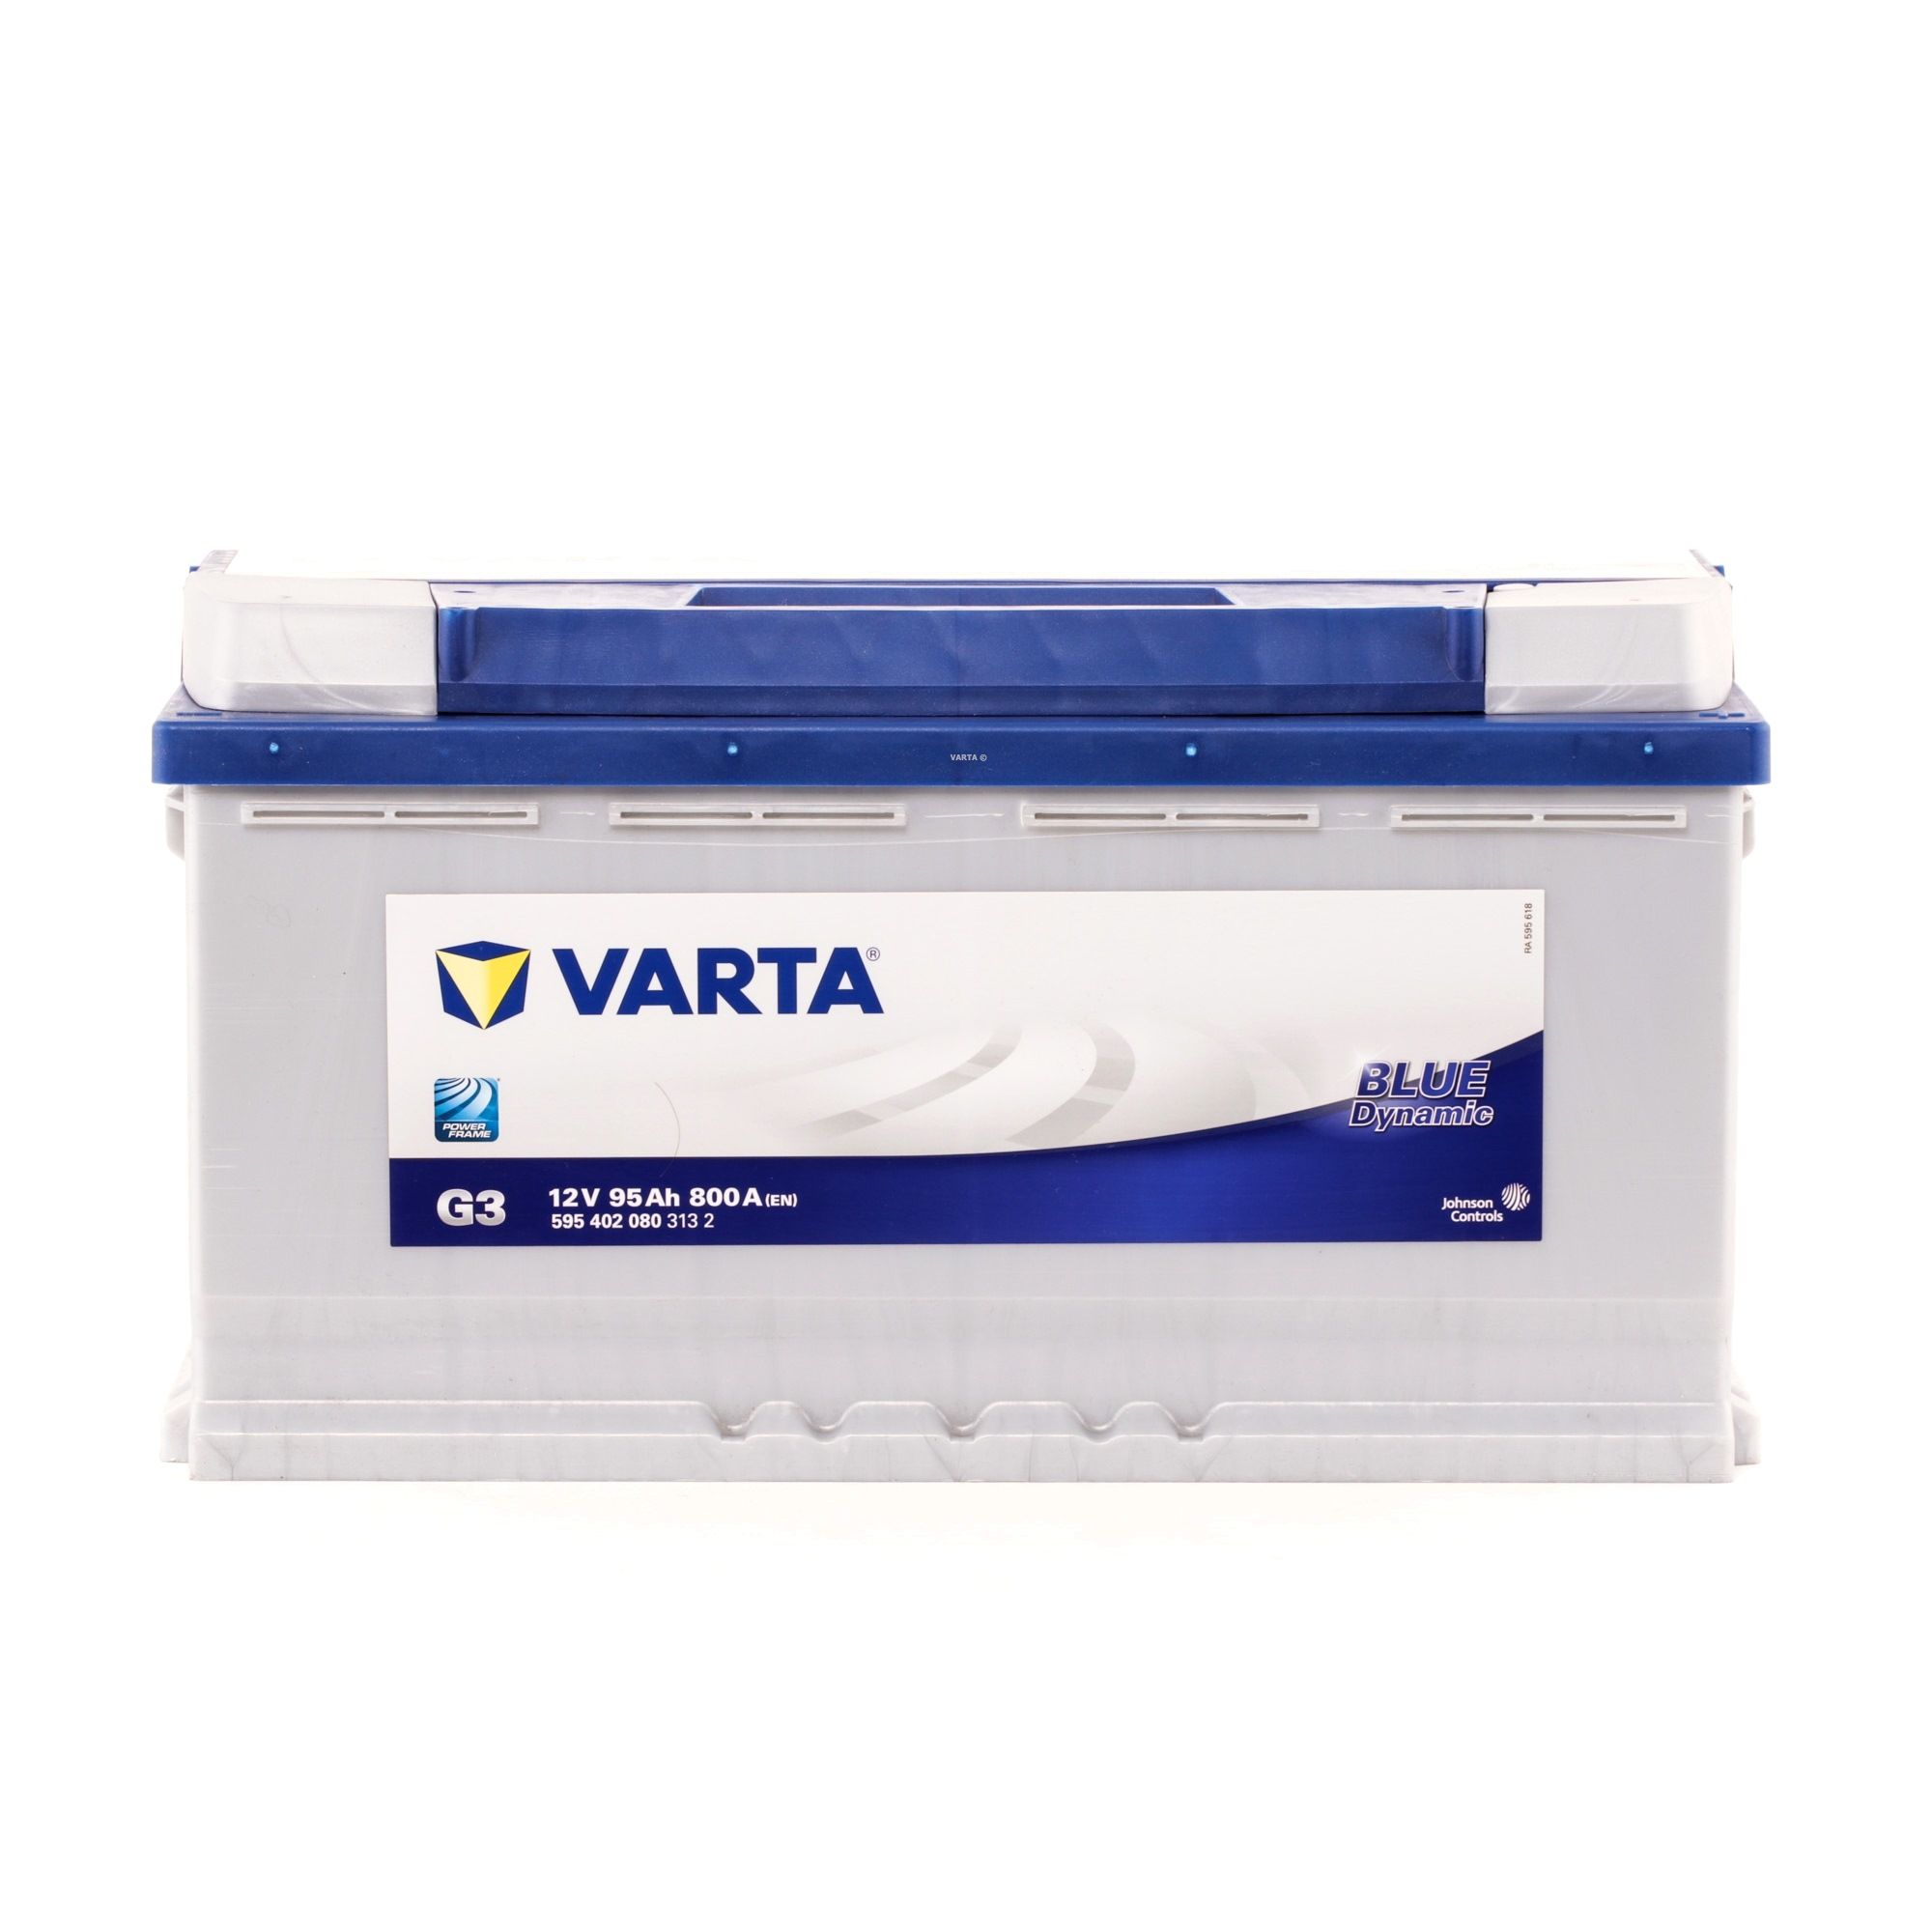 G3 VARTA 5954020803132 d'origine MERCEDES-BENZ CLK 2008 Batterie 12V 95Ah 800A B13 insensibilité aux secousses augmentée